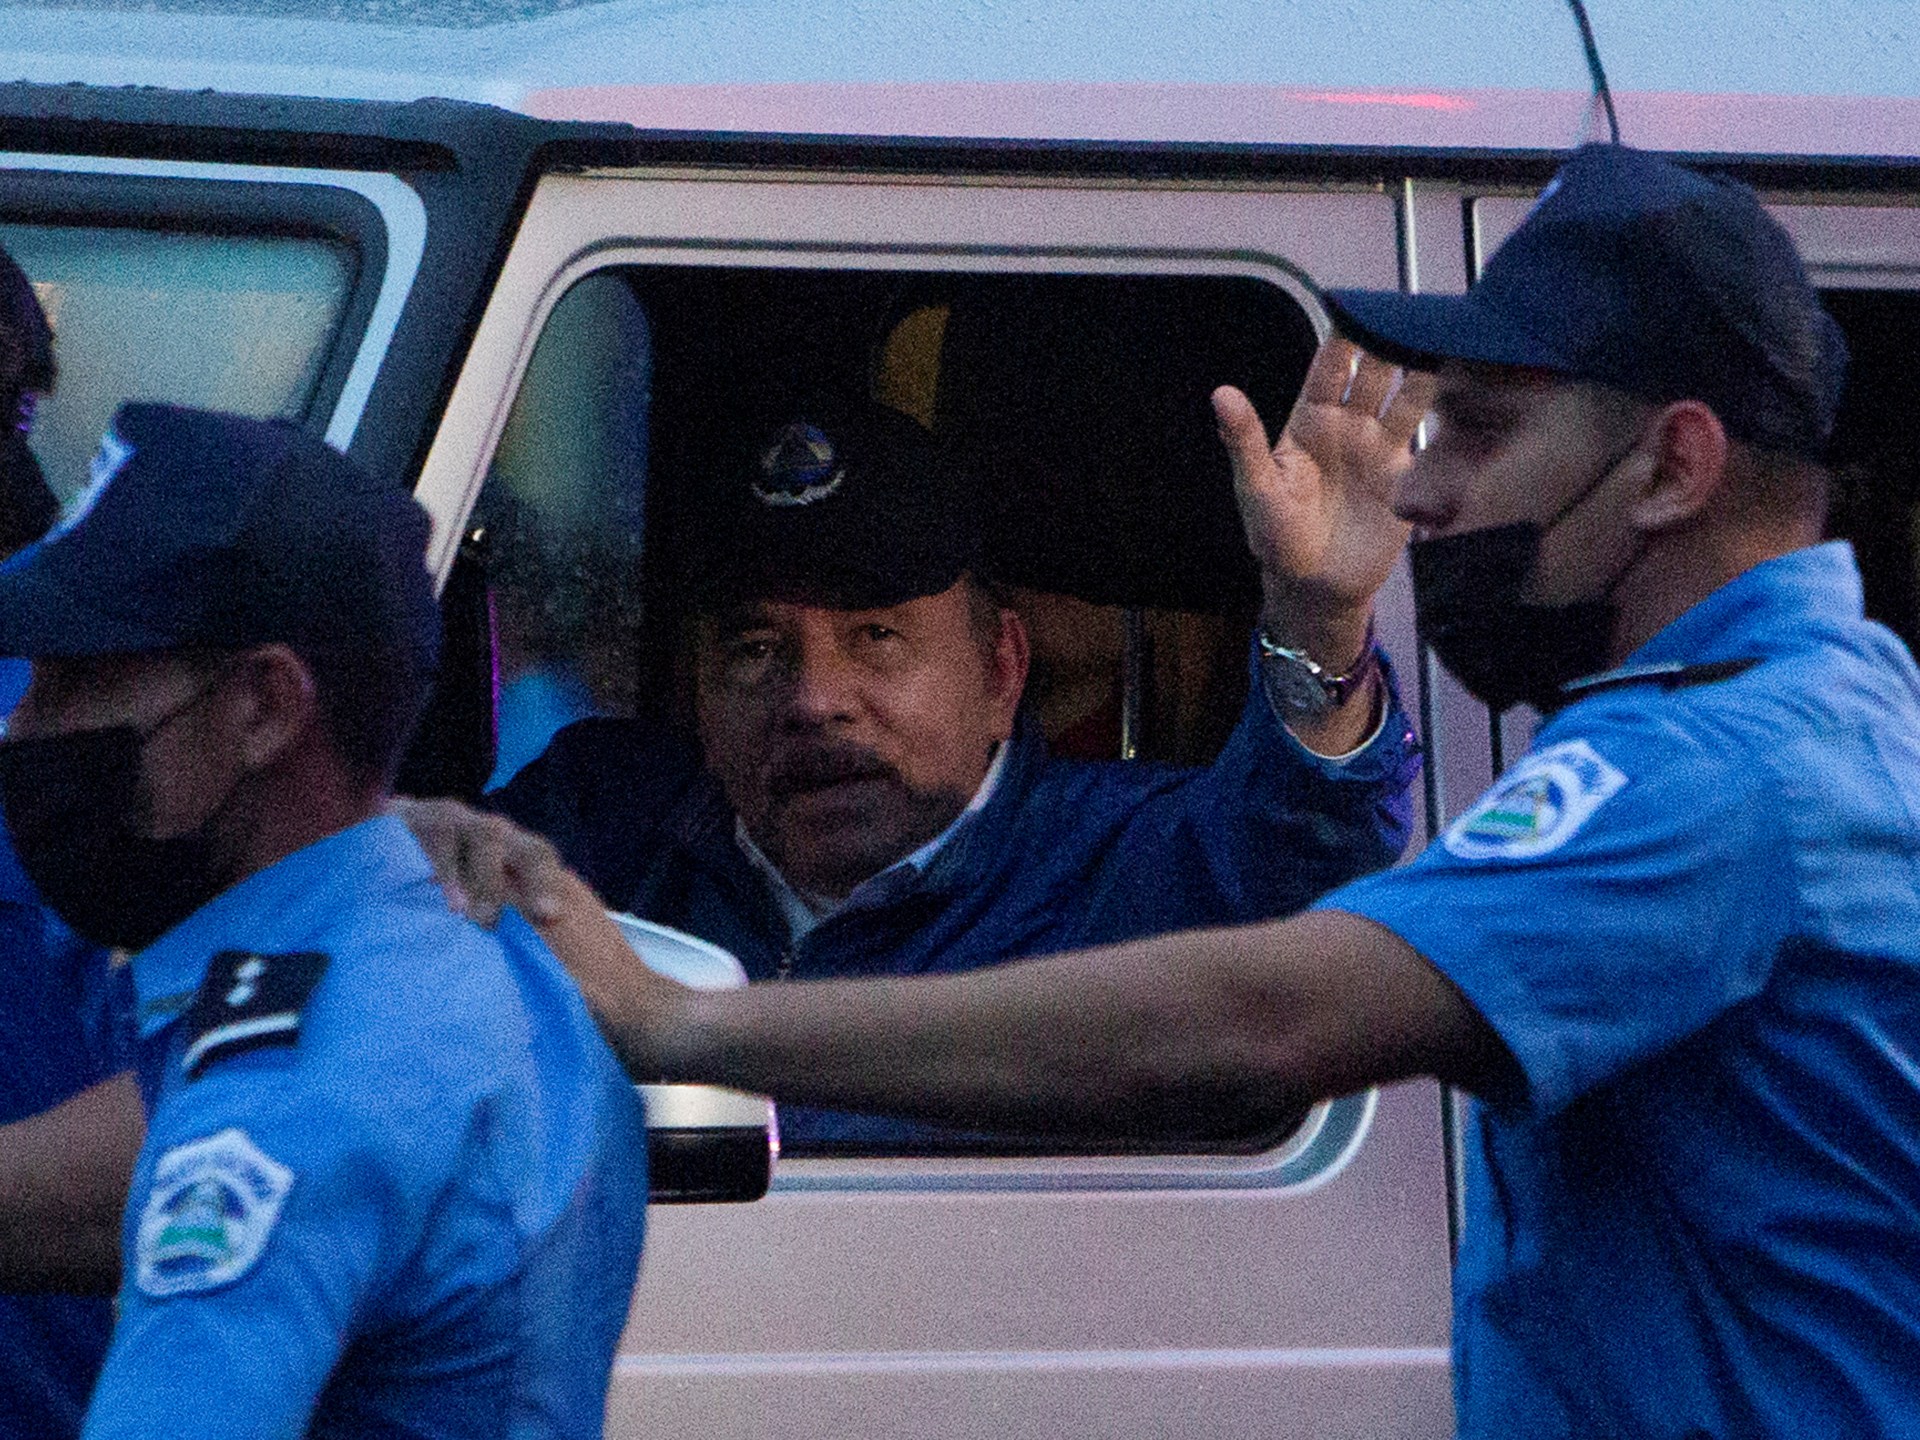 Nikaragua perintahkan penutupan Palang Merah dalam penumpasan lanjutan |  Berita Hak Asasi Manusia